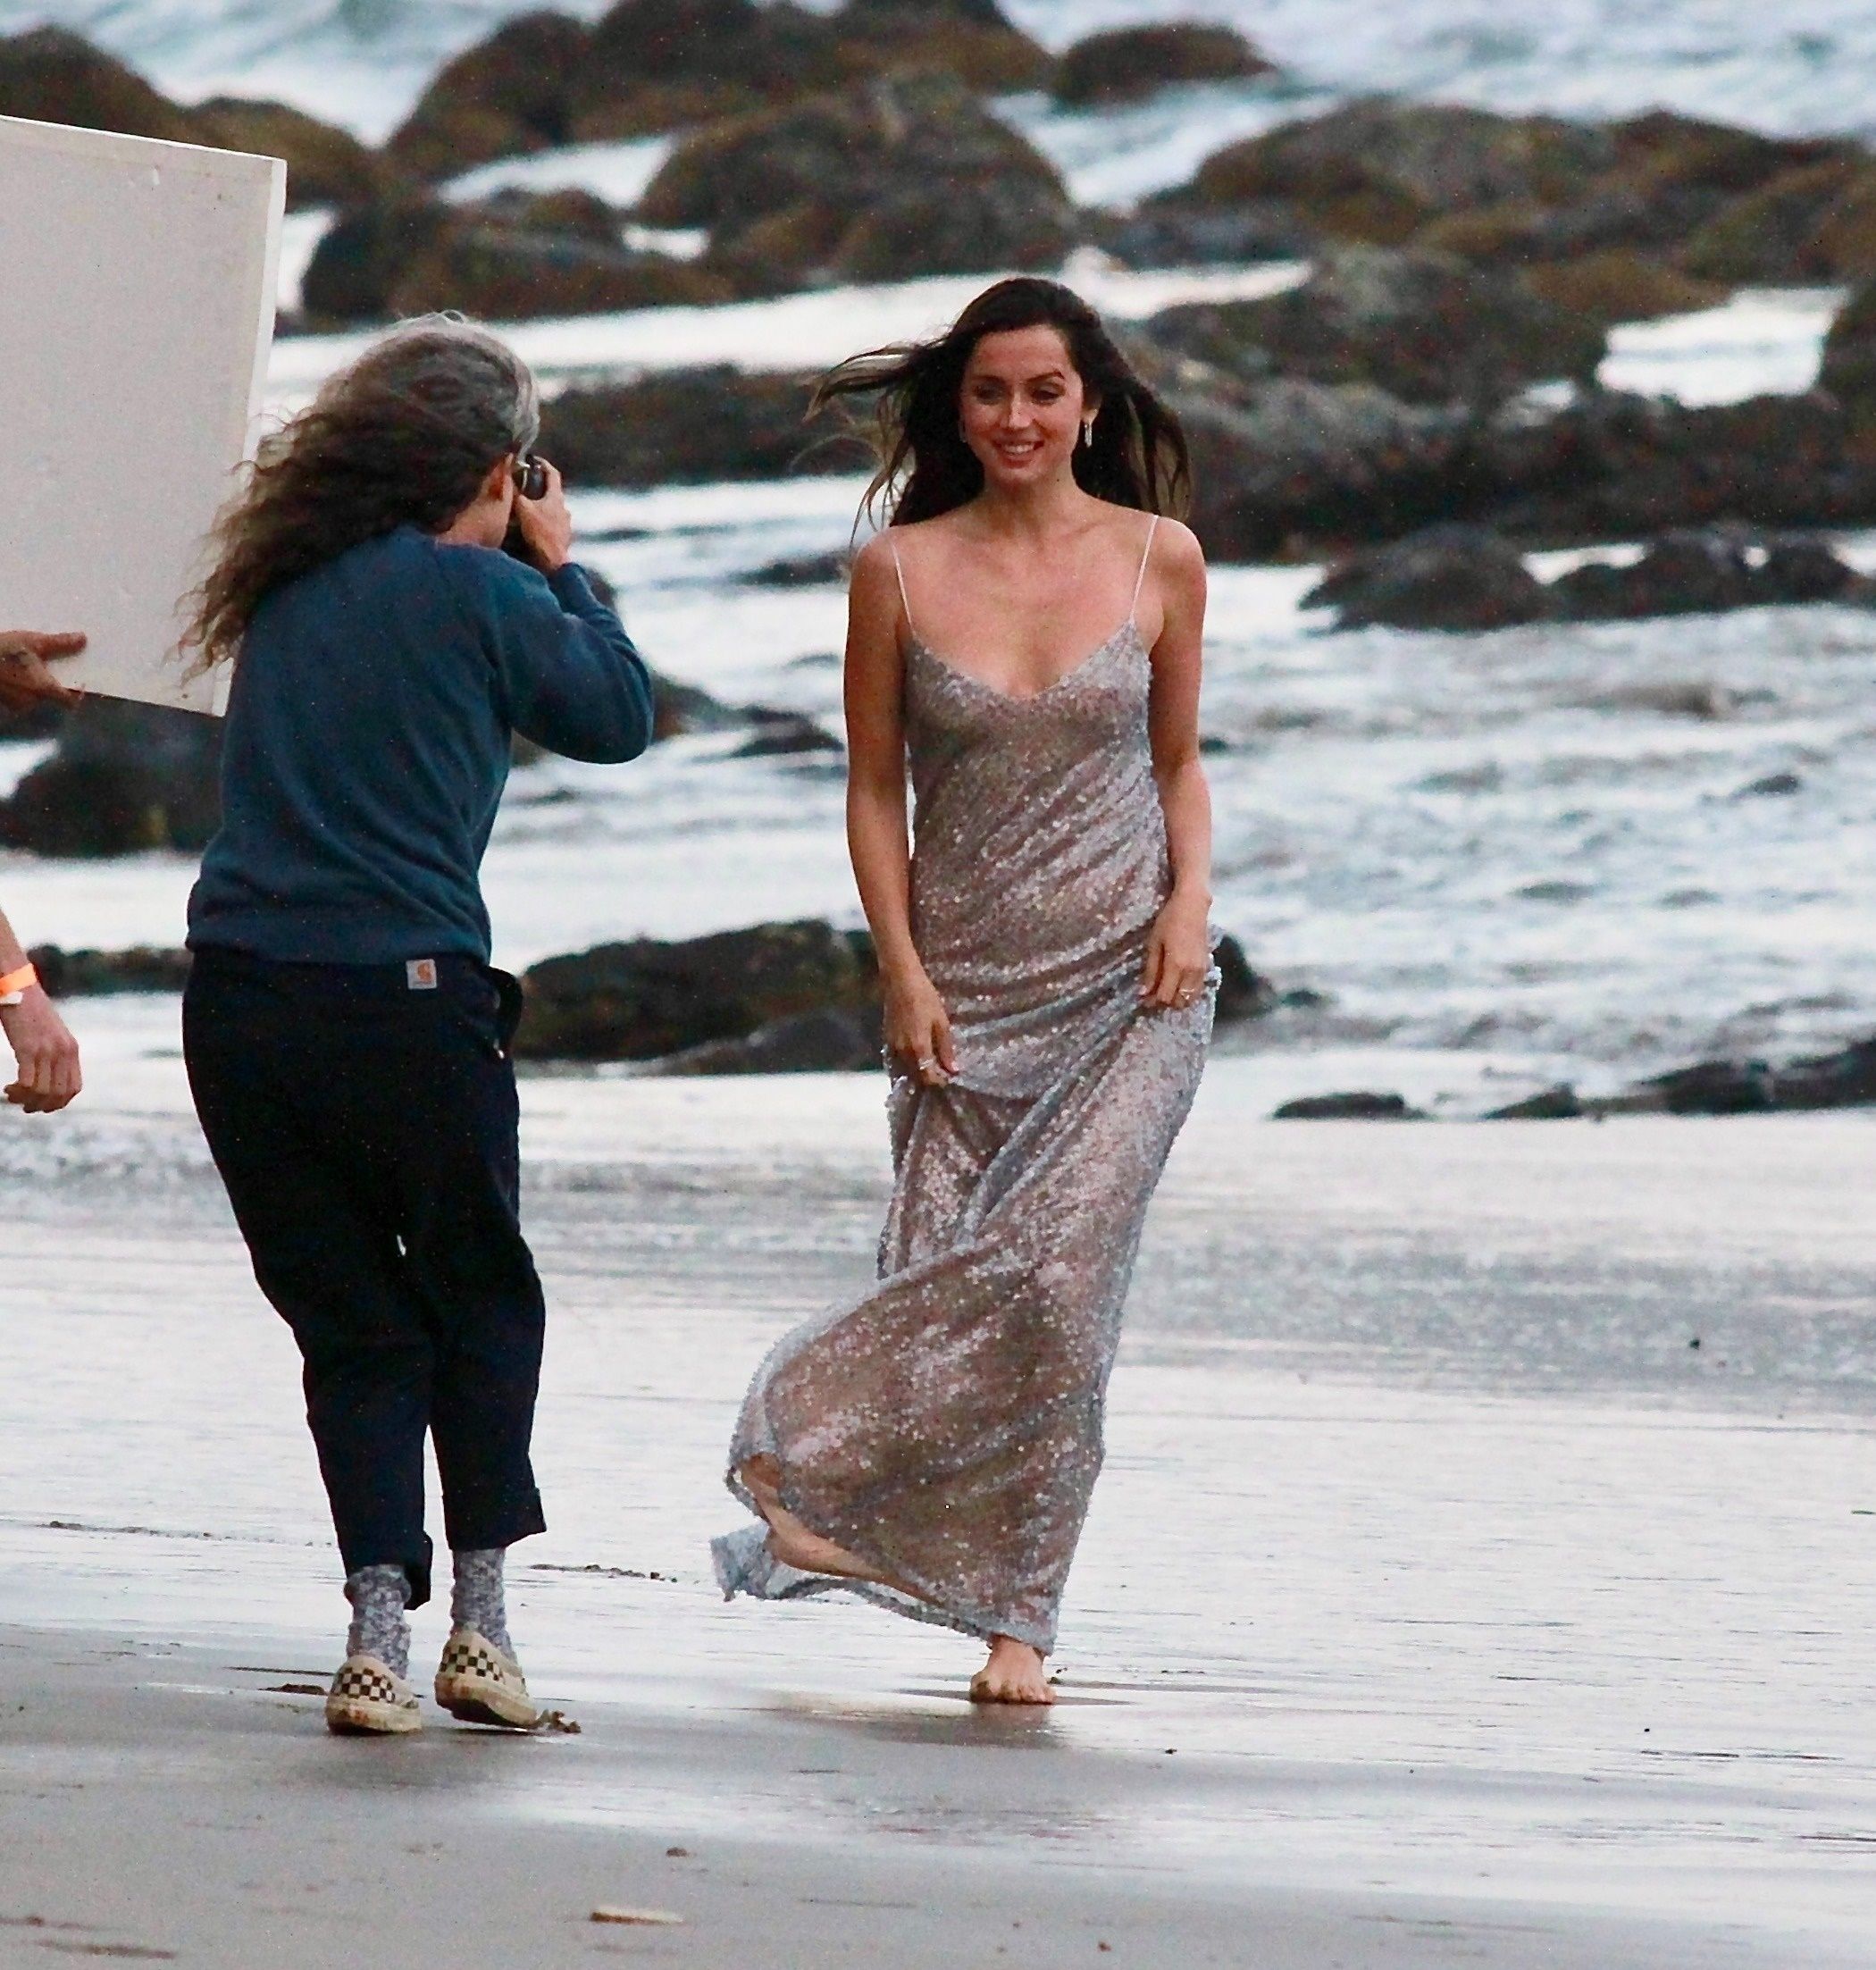 Ana de Armas Shoots a Sce
ne for a Perfume Commercial at the Beach (67 Photos)